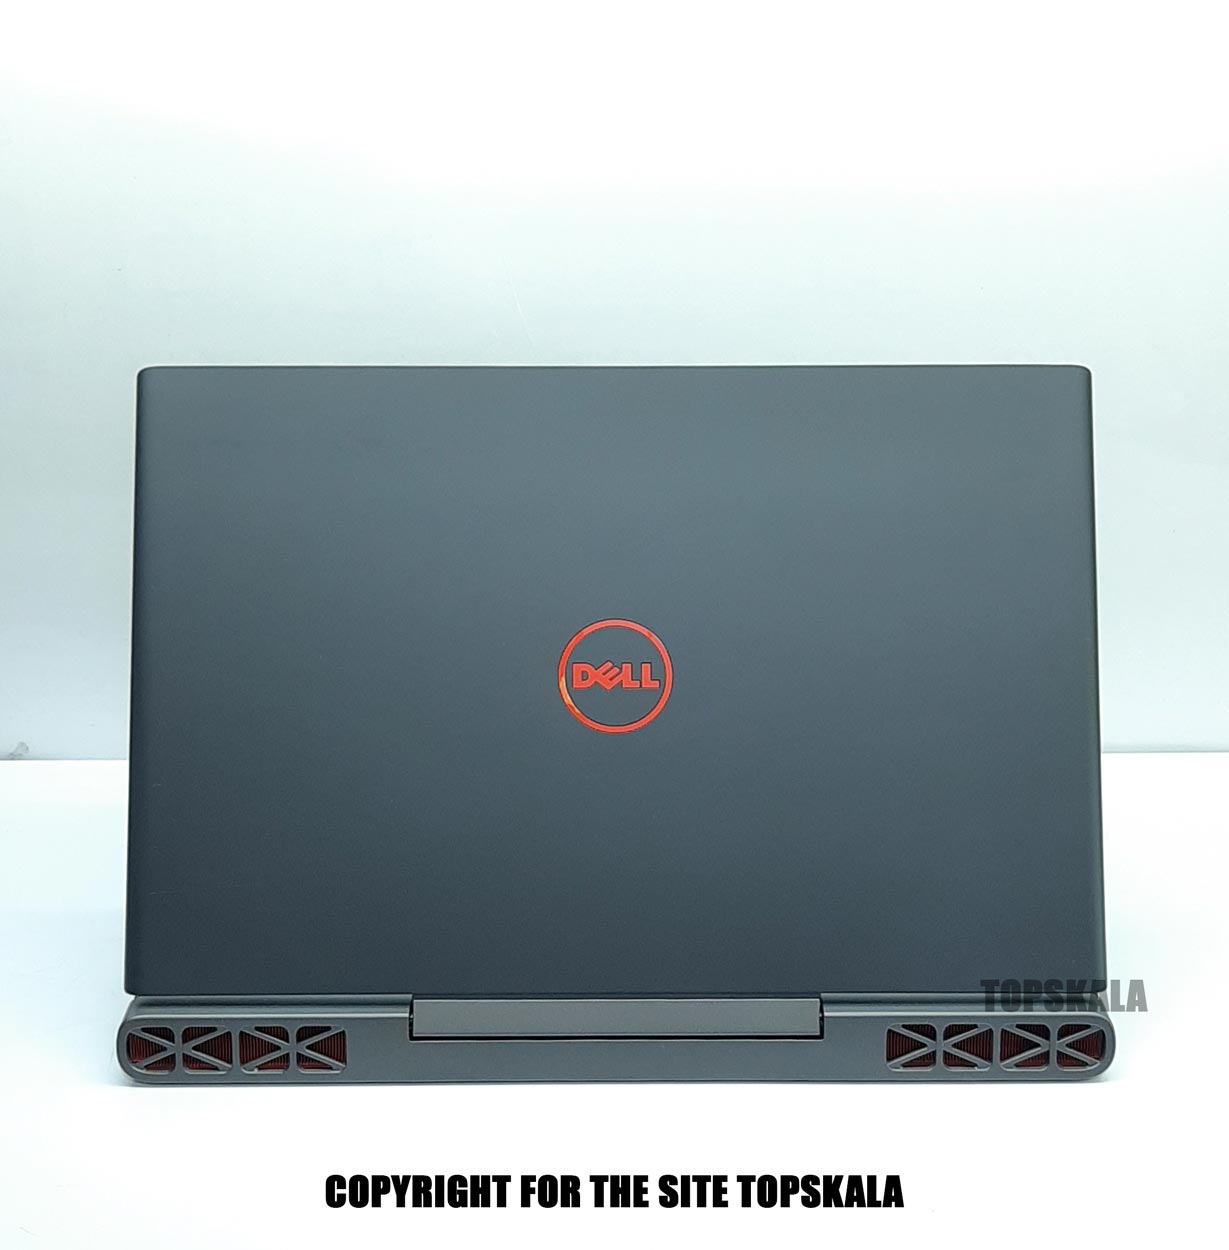 لپ تاپ استوک دل مدل Dell inspiron 15 7000 با مشخصات i5-7th-16GB-256GB-SSD-6GB-nVidia-GTX-1060laptop-stock-dell-model-inspiron-15-7000-i5-7300HQ-16GB-256GB-SSD-6GB-nVidia-GTX-1060